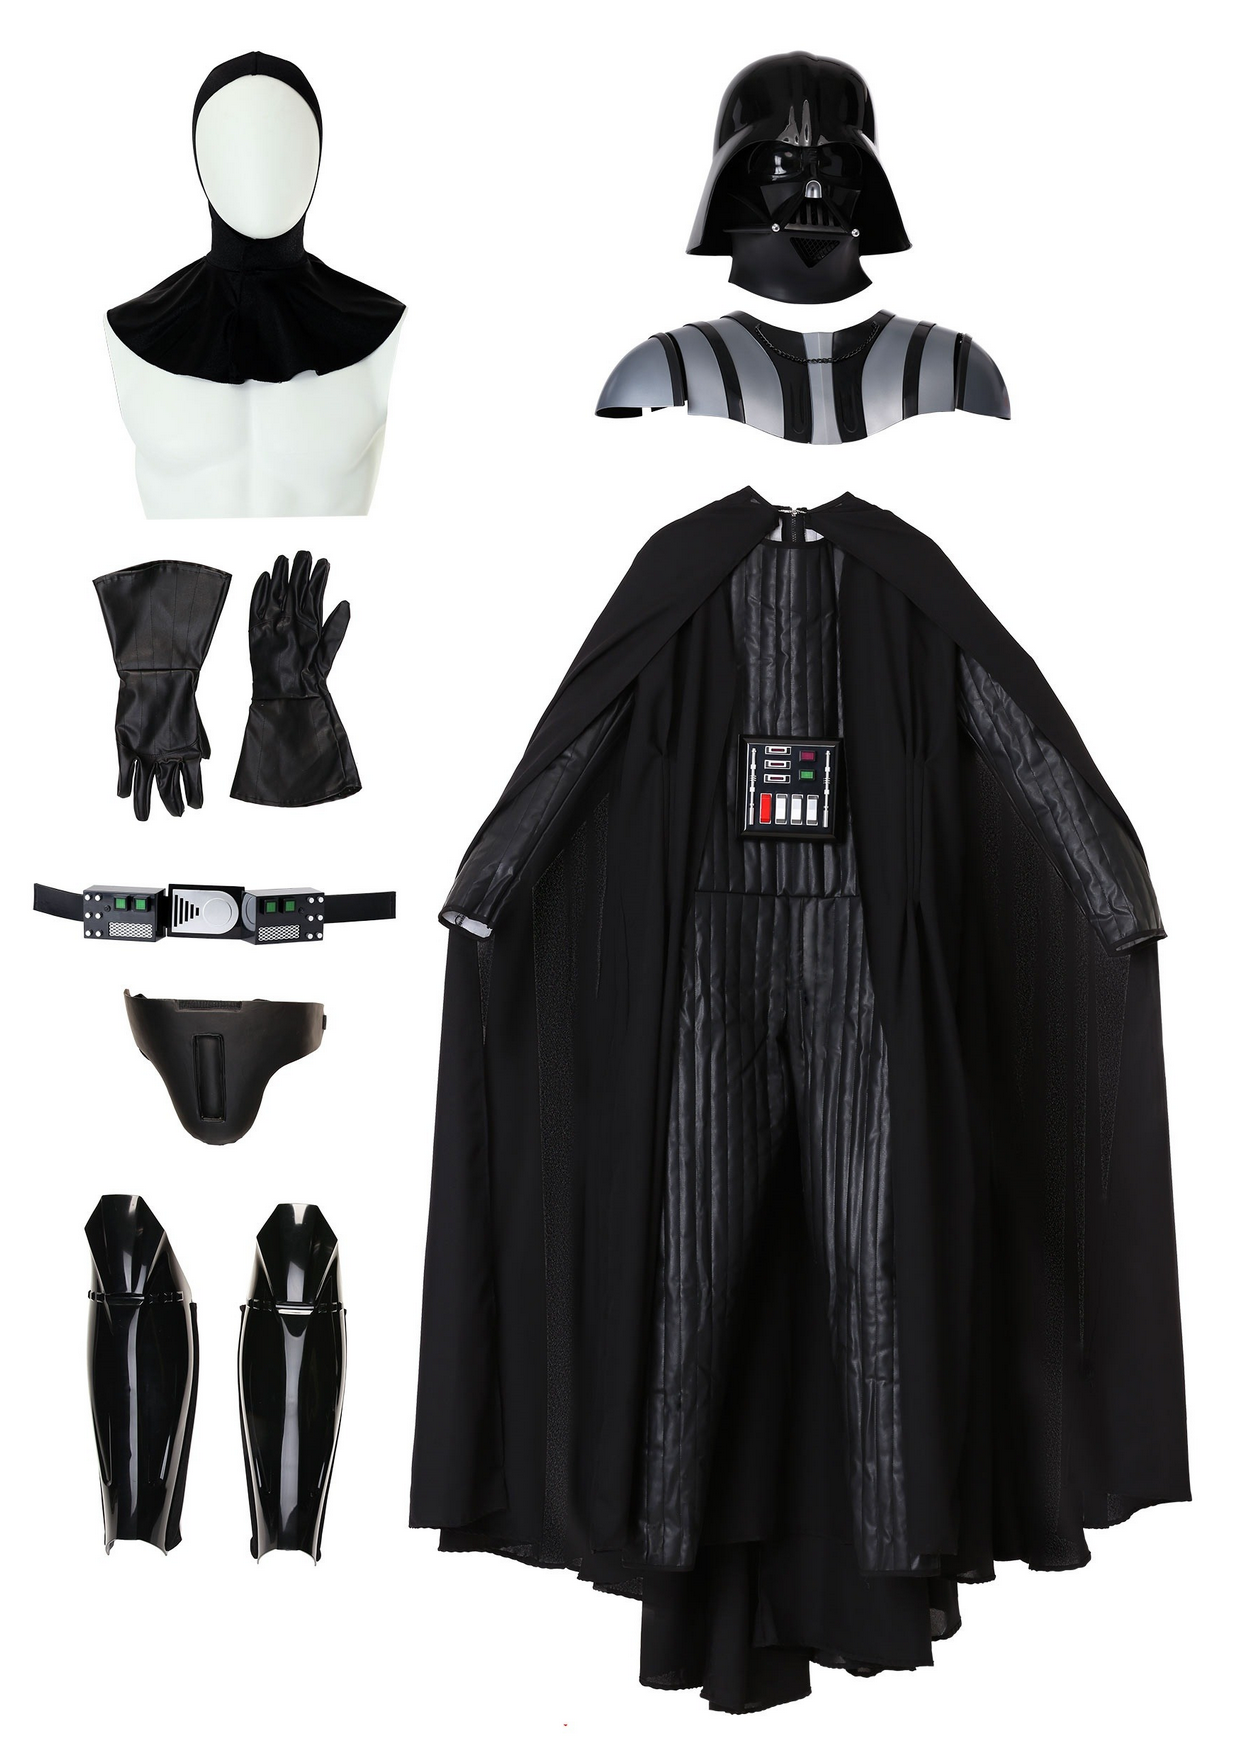 Supreme Edition Darth Vader Adult Costume w/ LED Lights & Sounds